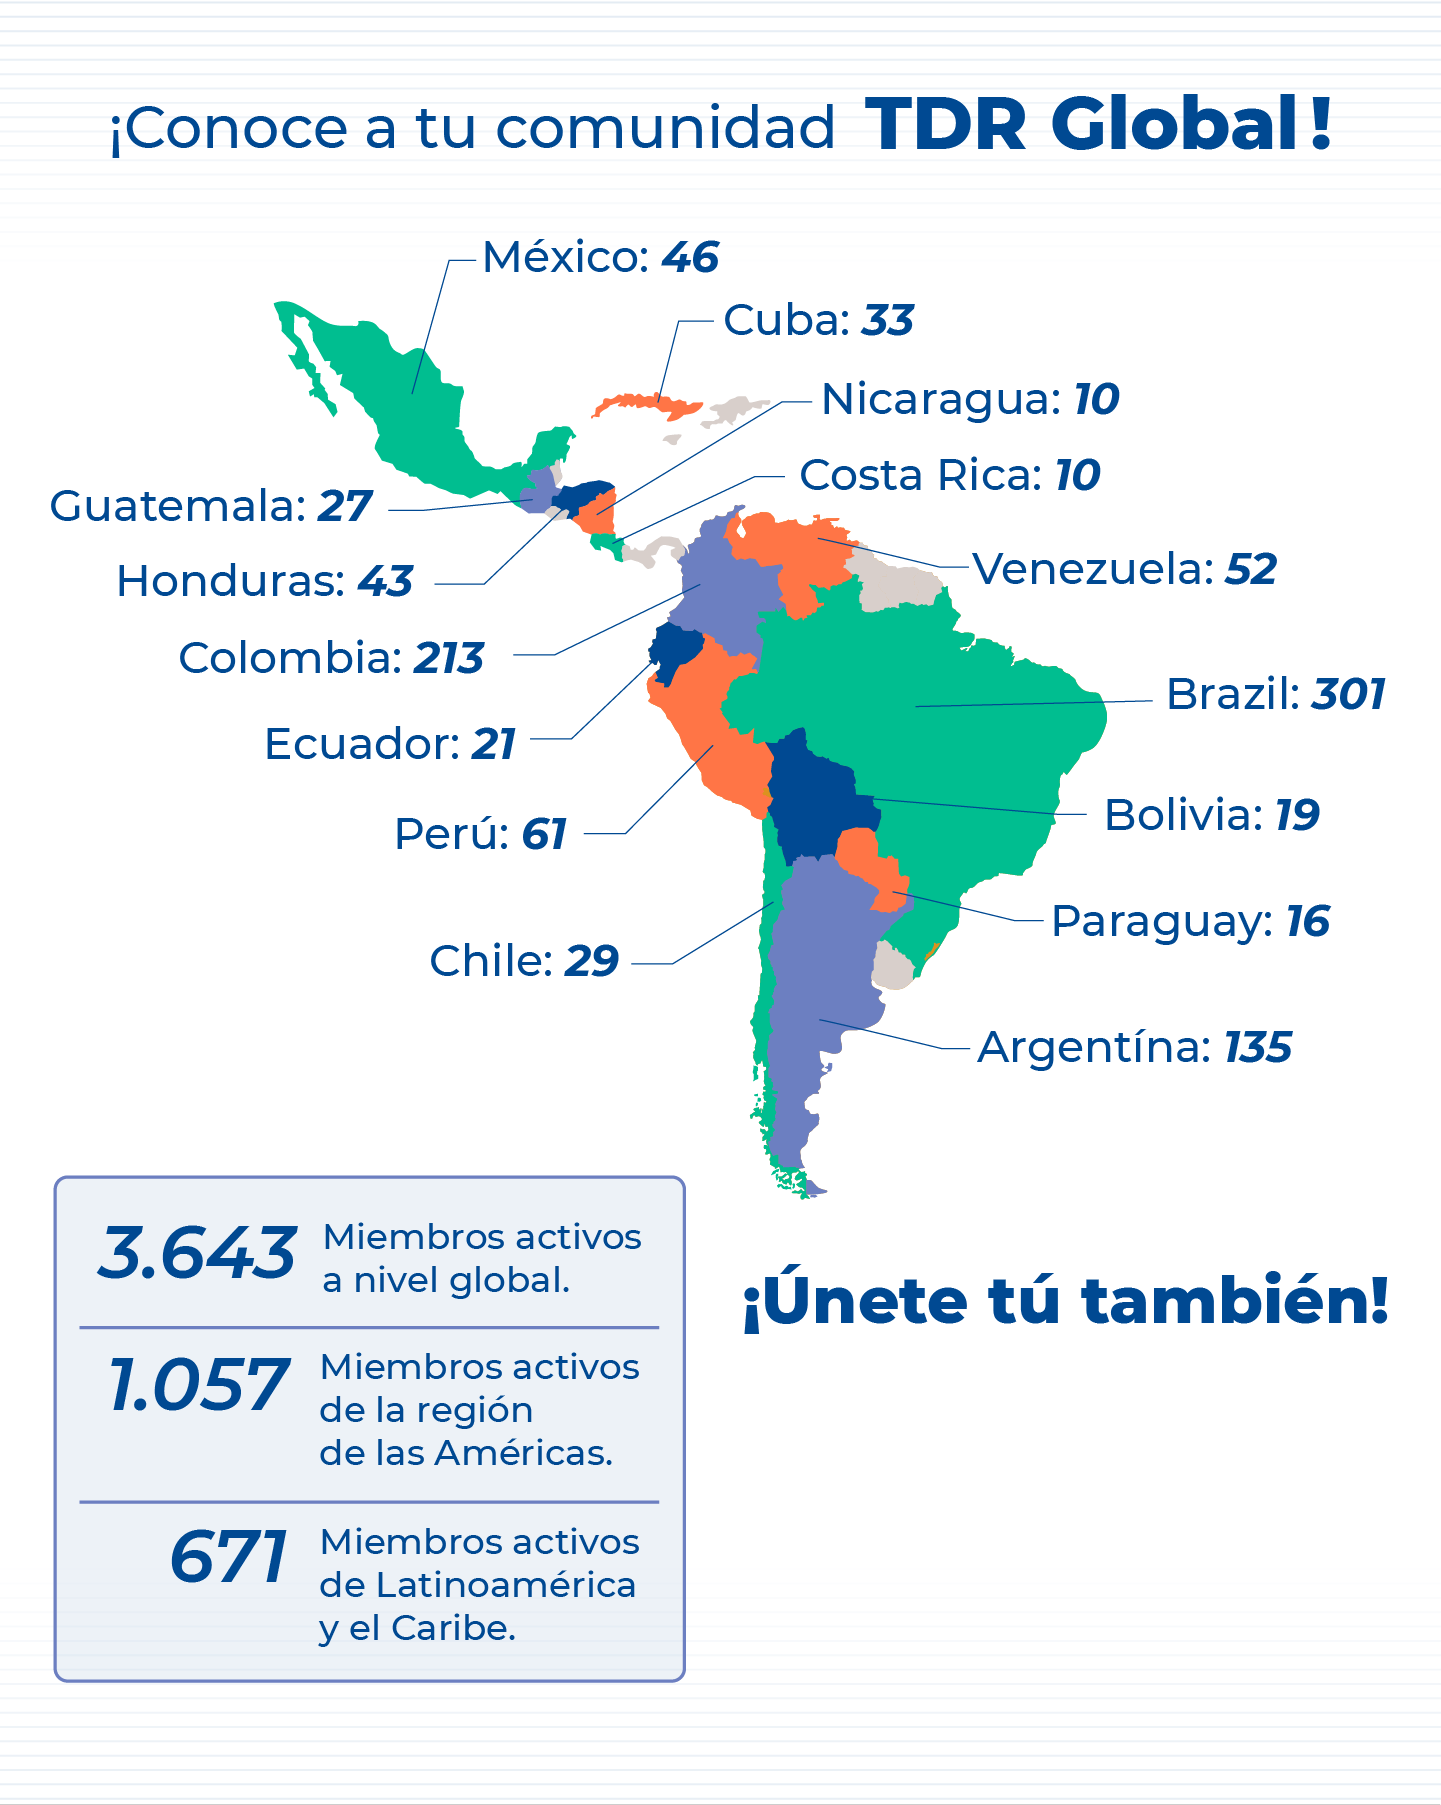 Comunidad TDR global en Latinoamérica y el Caribe